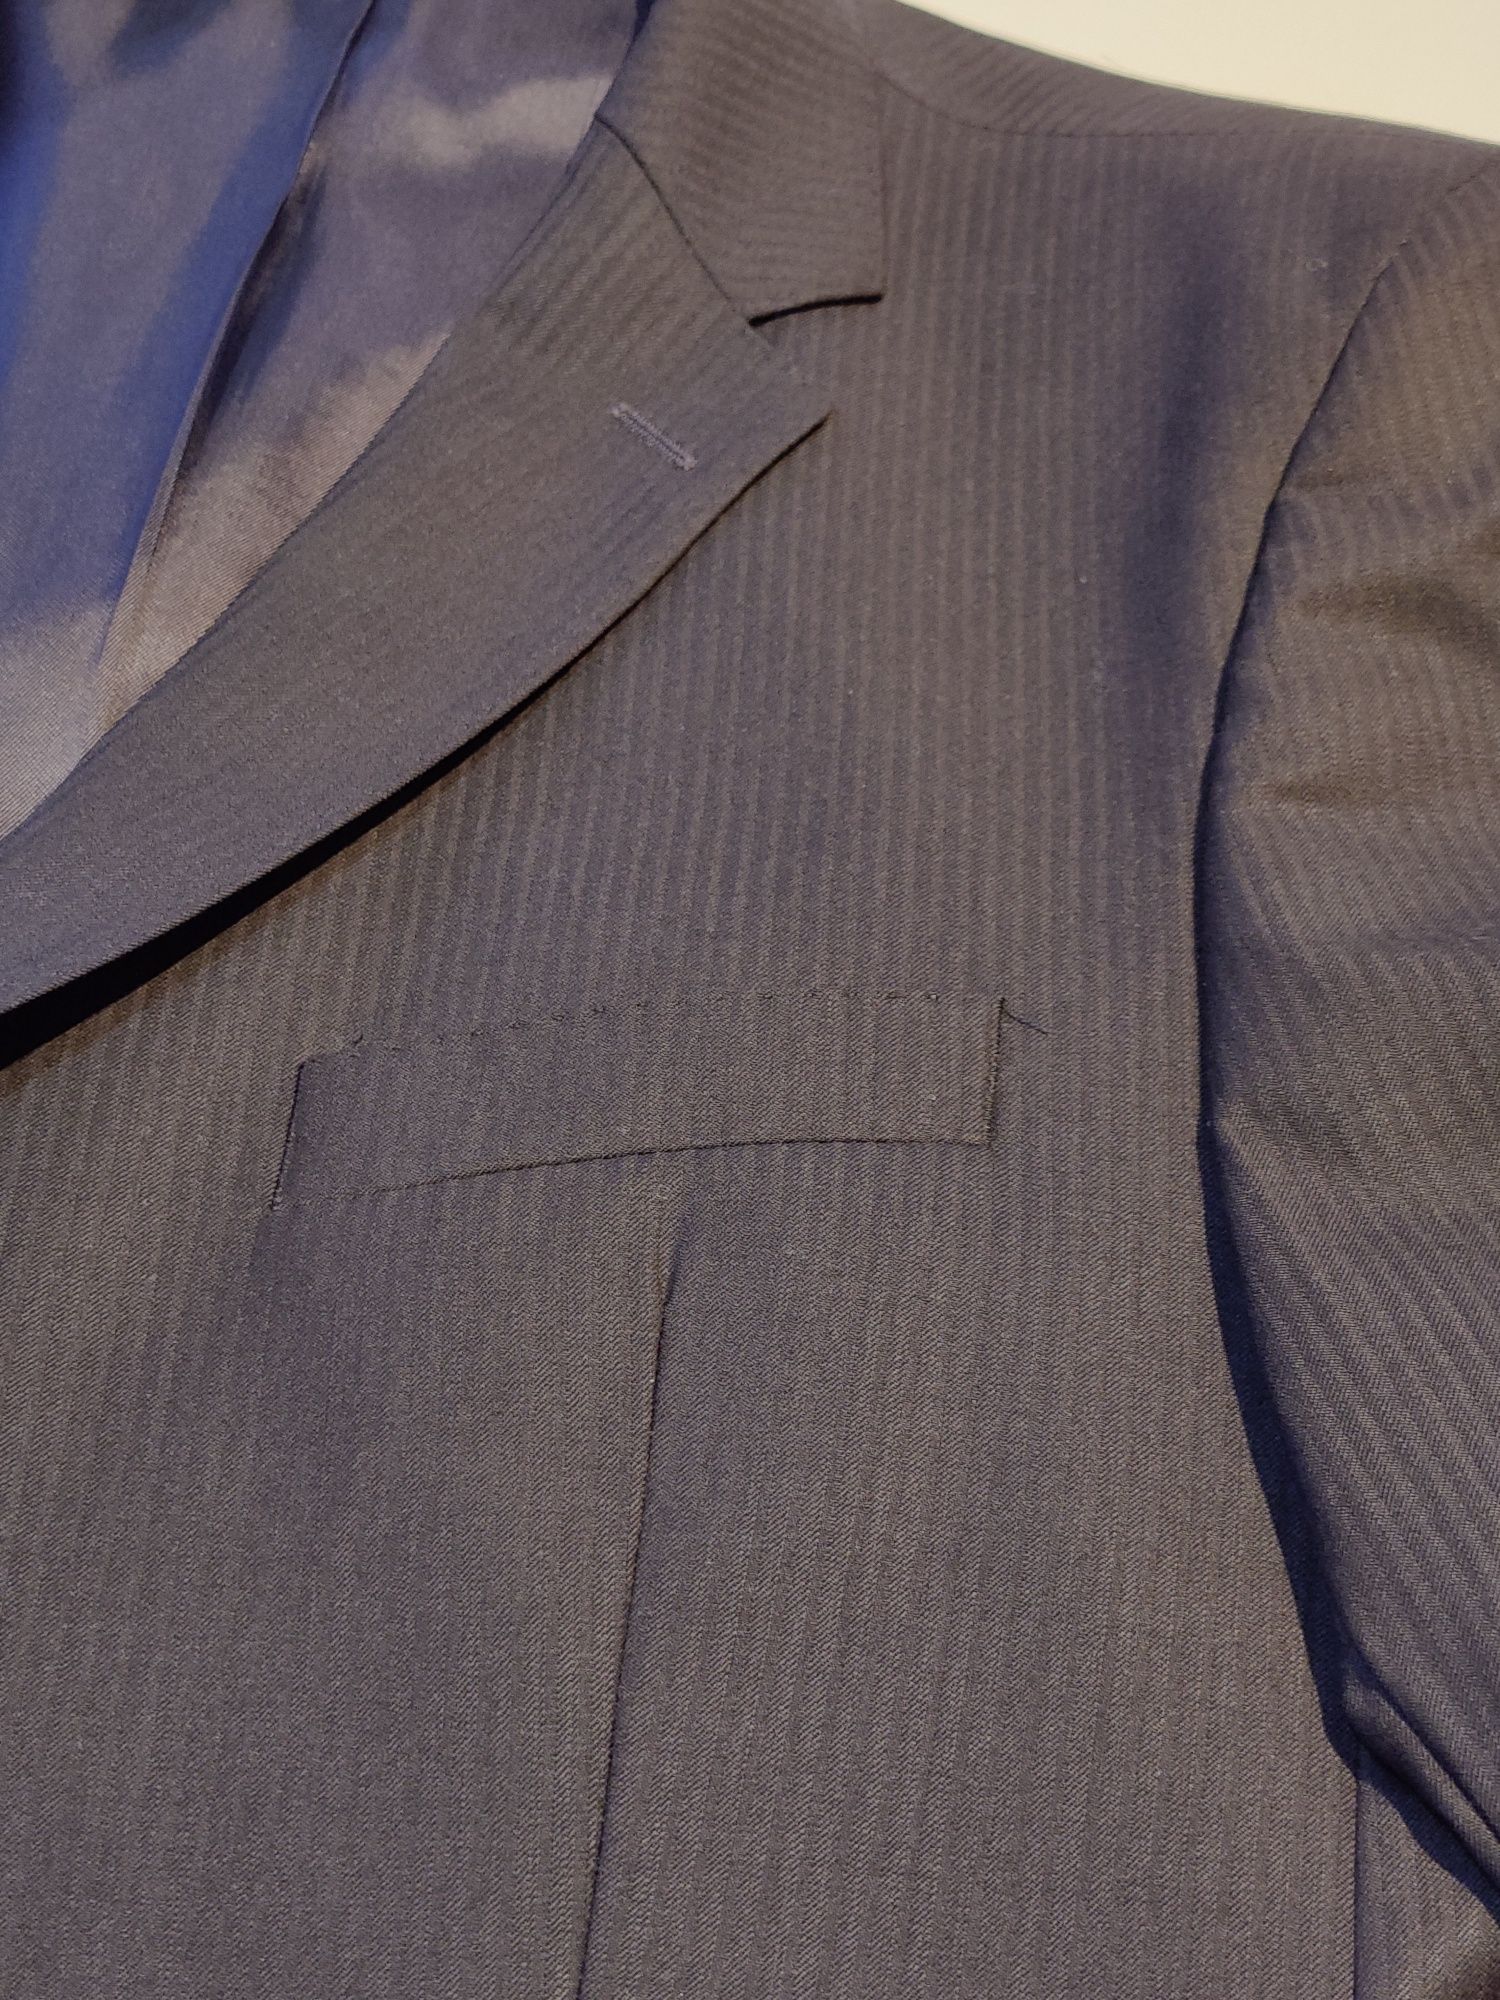 Fato completo, azul escuro riscas, tamanho 48/56, Suits Inc